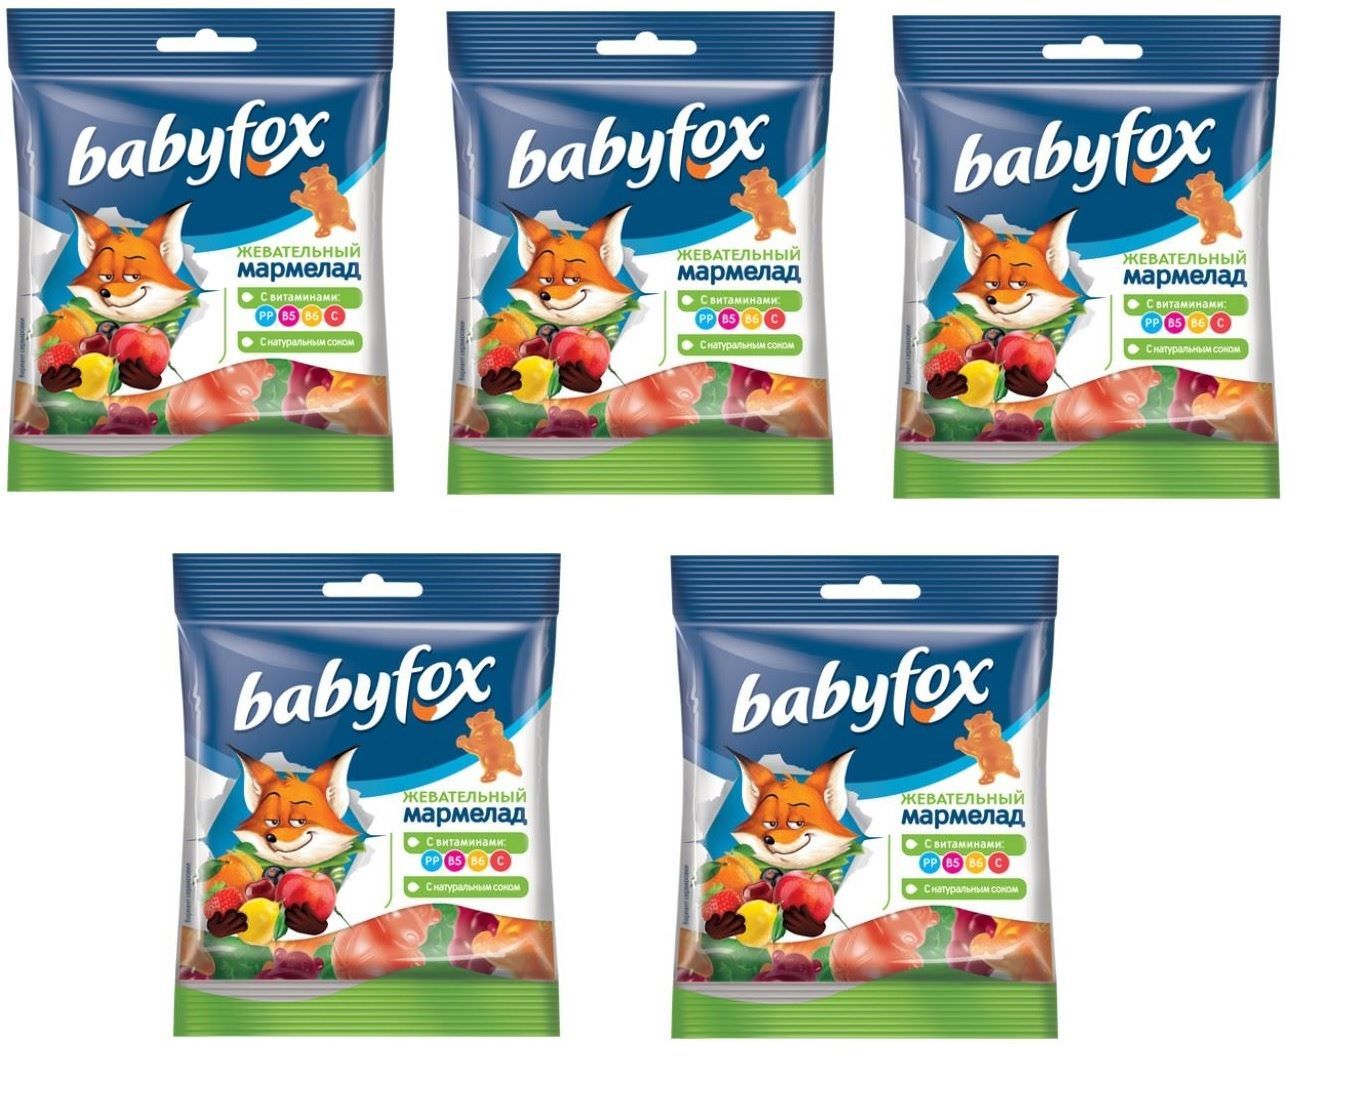 Мармелад Babyfox, 30г. Baby Fox мармелад. Мармеладки с лисой. Мармелад с витаминами.